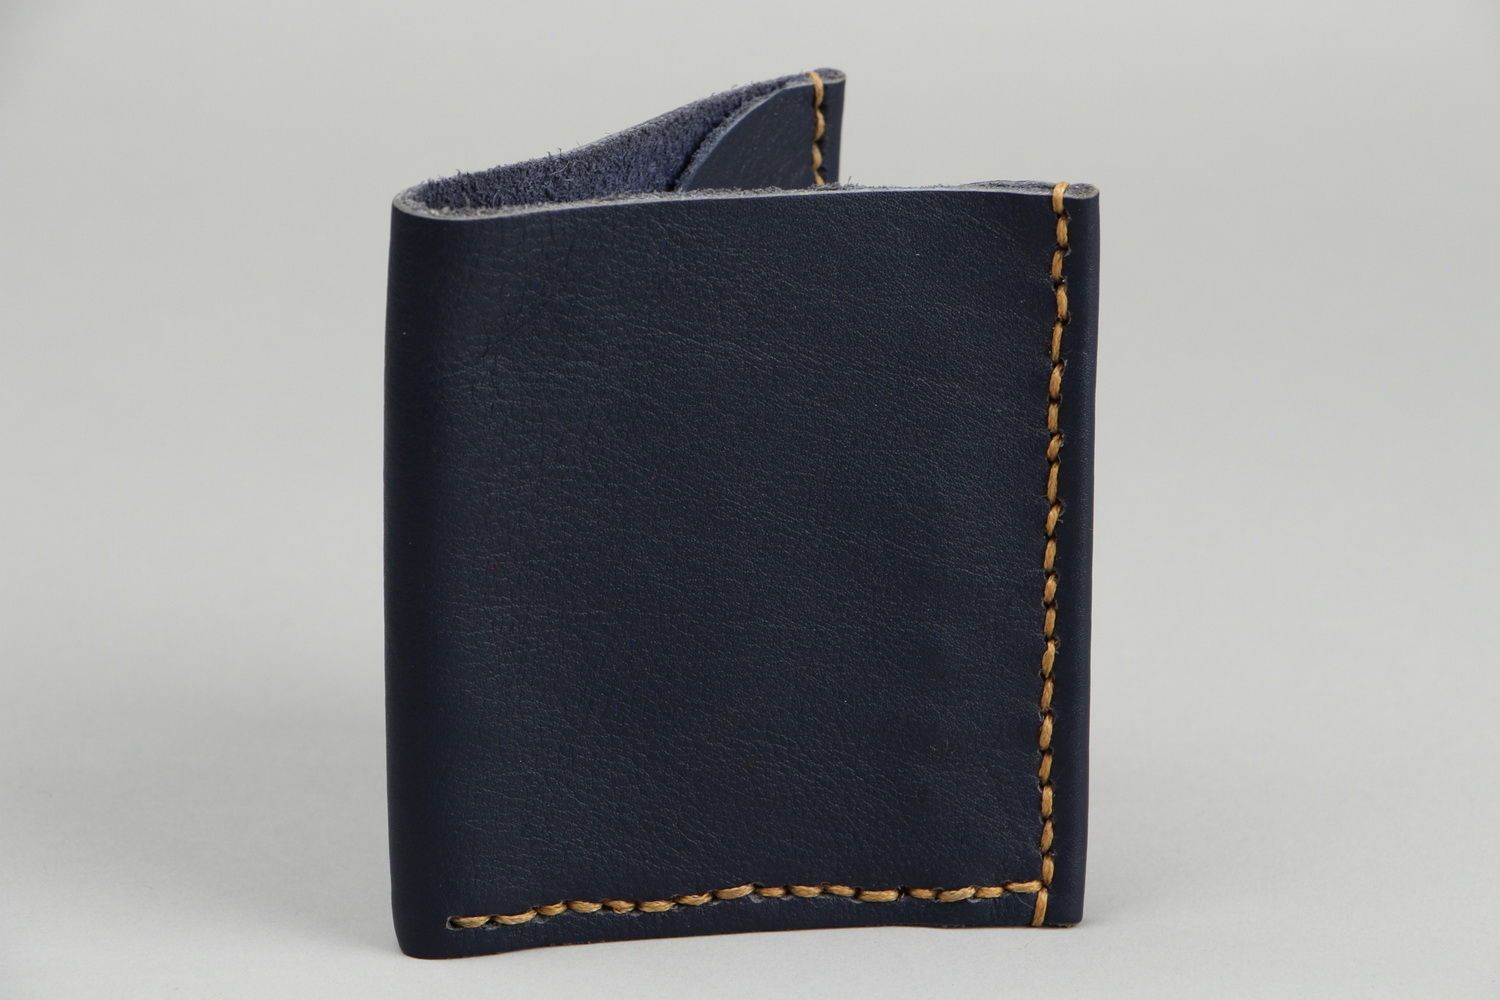 Кожаный кошелек синего цвета фото 2